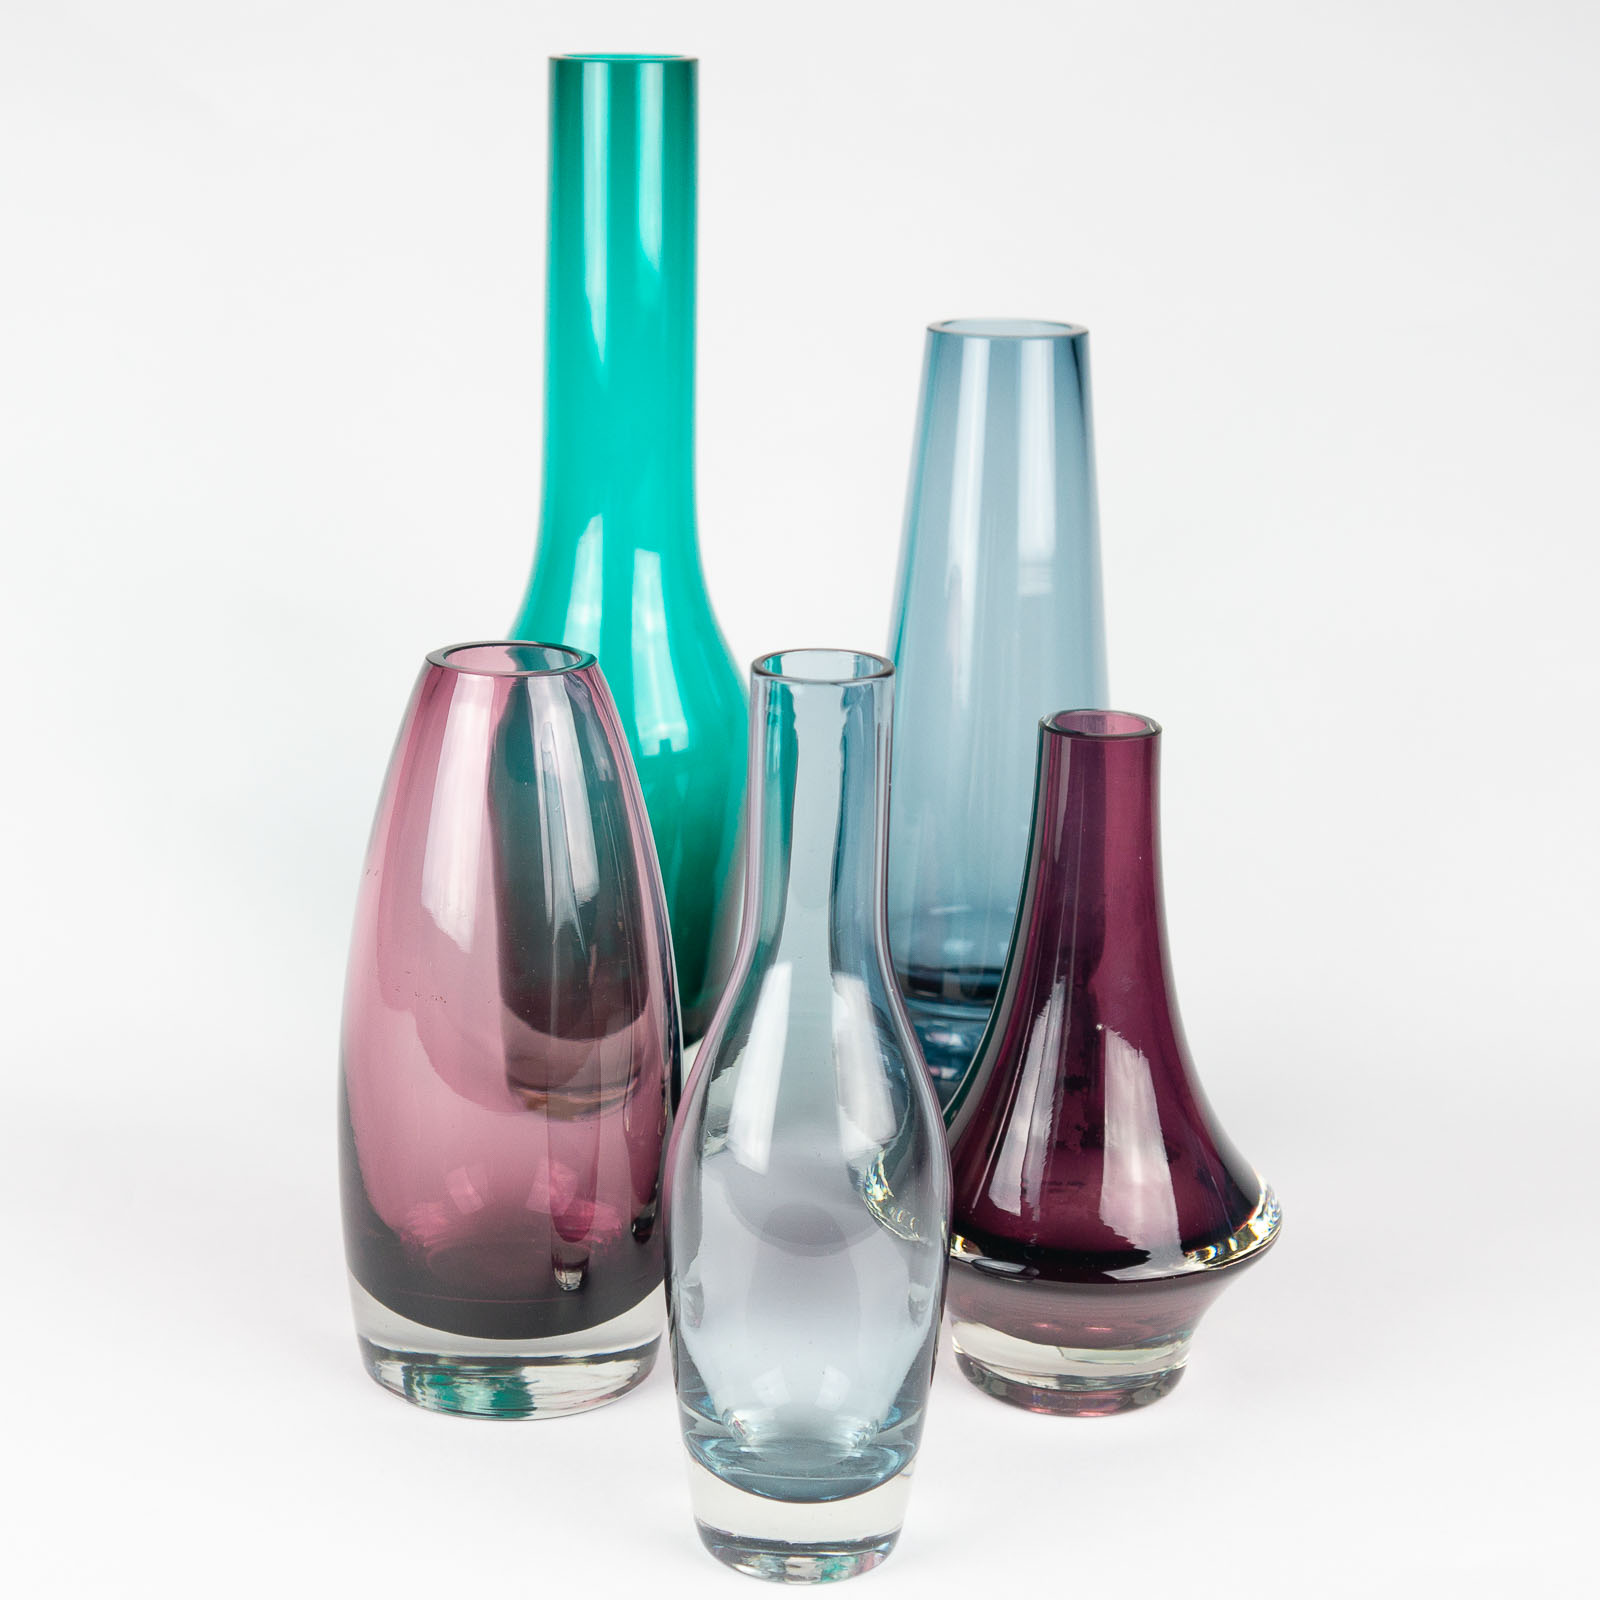 Tamara Aladin - A set of five glass Art-objects - Riihimäki Riihimäen lasi Oy